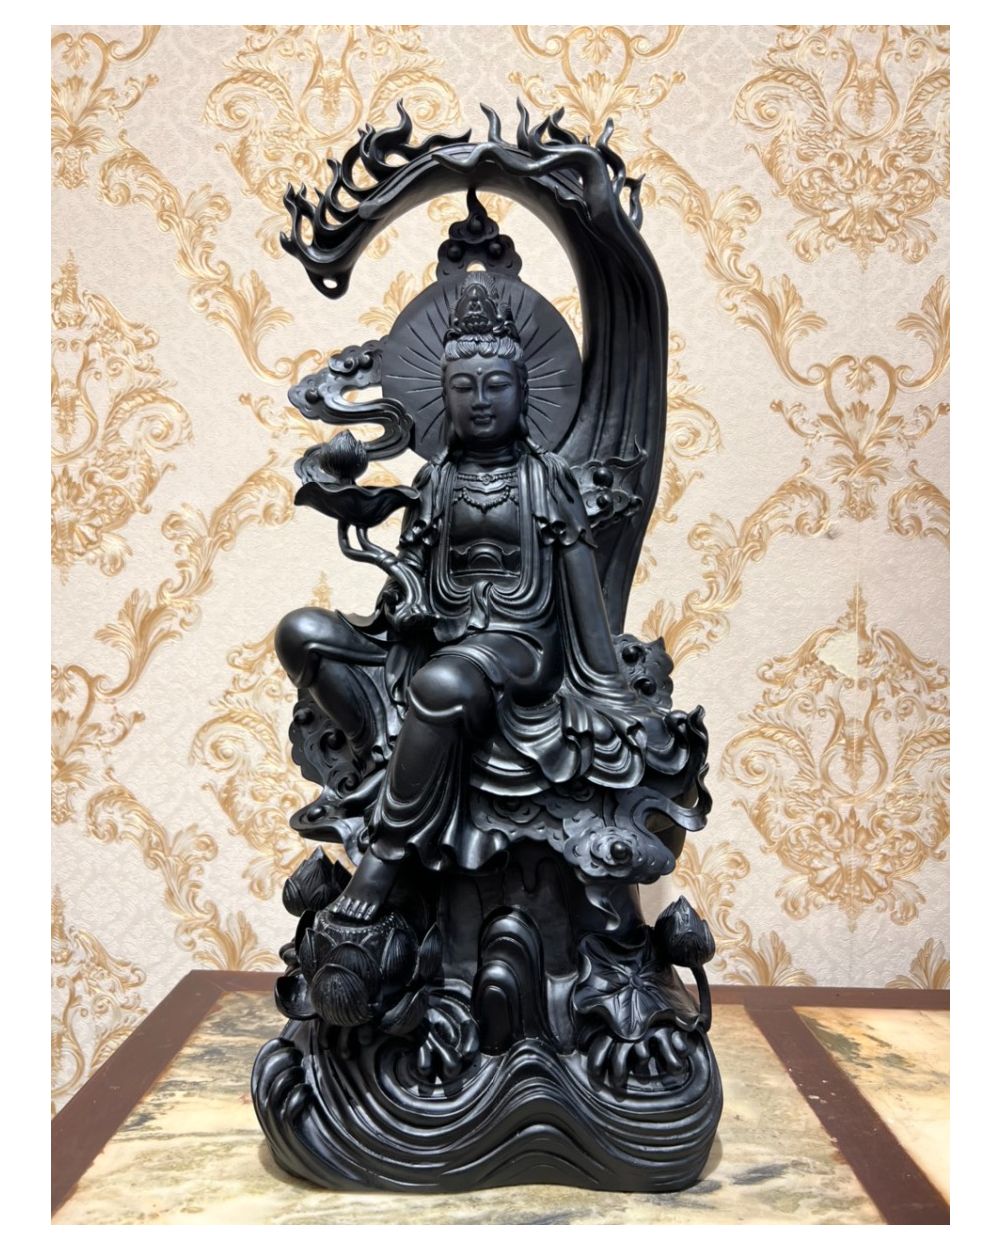 20 Hình Phật Quan Âm đẹp, ảnh Mẹ Quan Thế Âm Bồ Tát 3D chất lượng cao